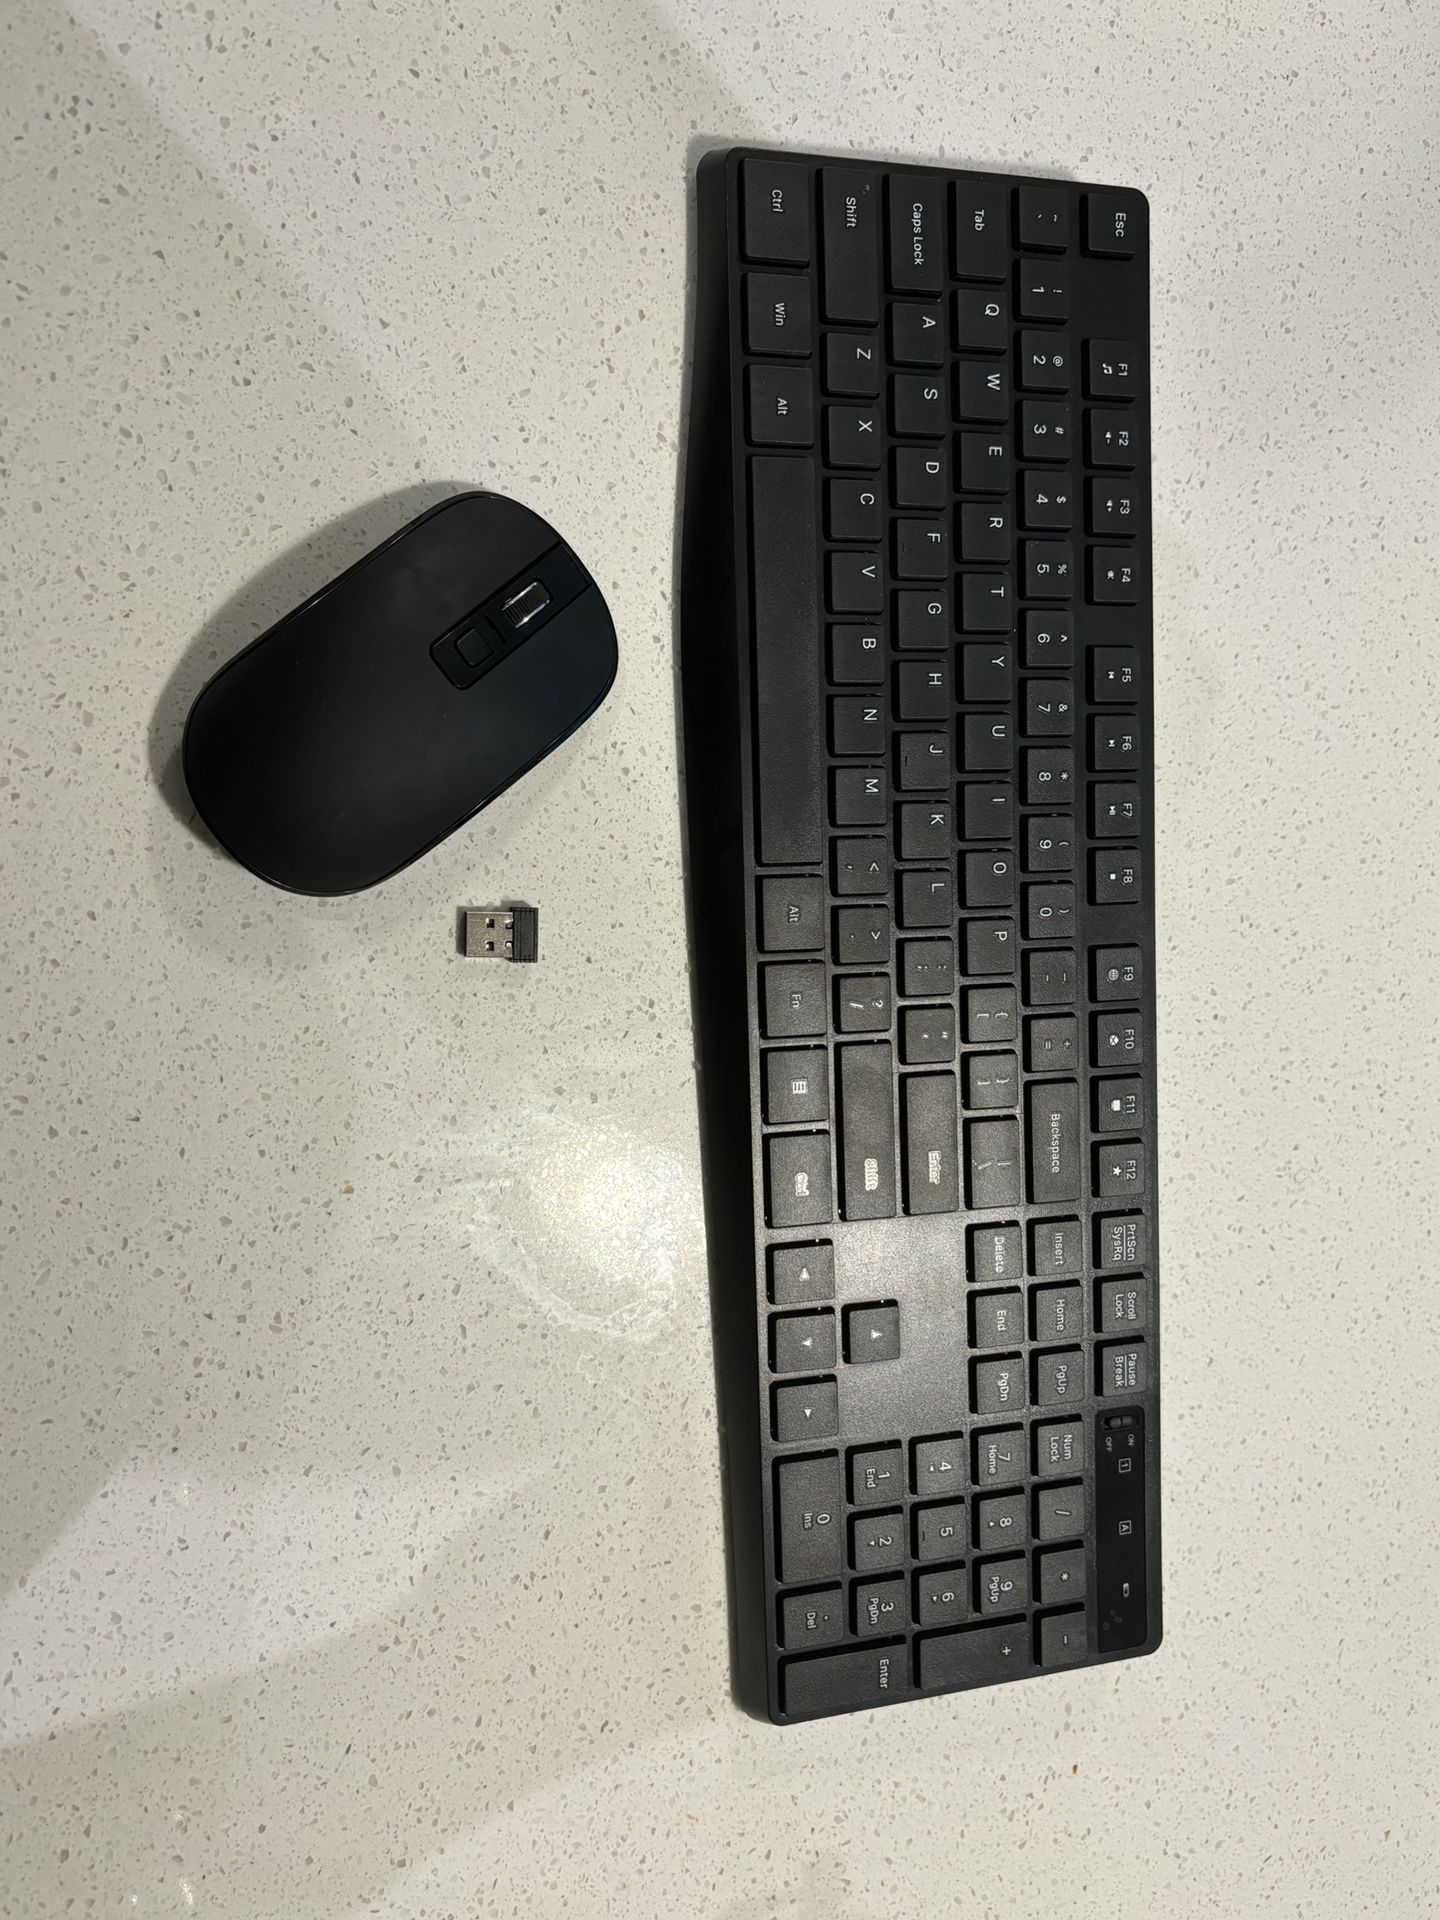 Wireless Keyboard & Mouse For Desktop -  $15